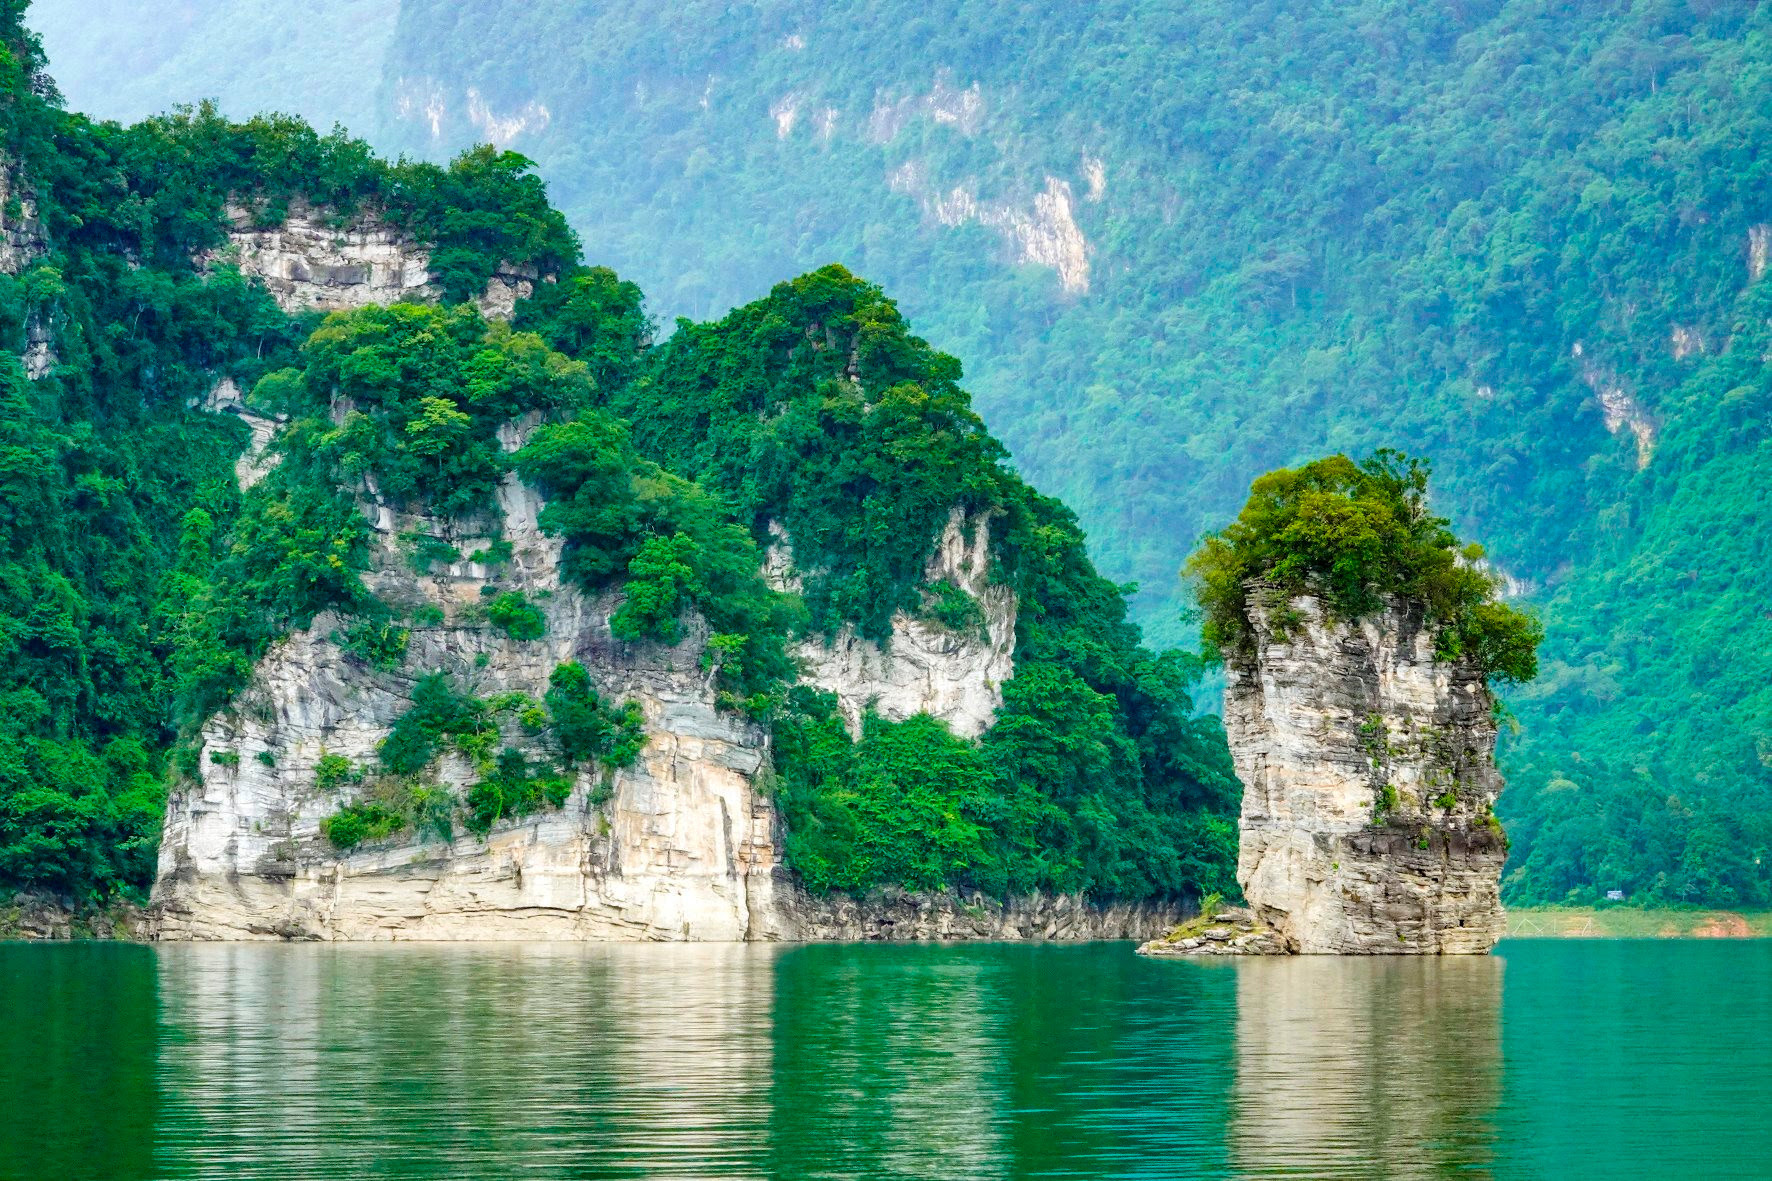 Hồ nước ngọt nhân tạo lớn nhất Tuyên Quang hiện ra đẹp như phim, có ngọn thác đổ, rừng nguyên sinh - Ảnh 12.